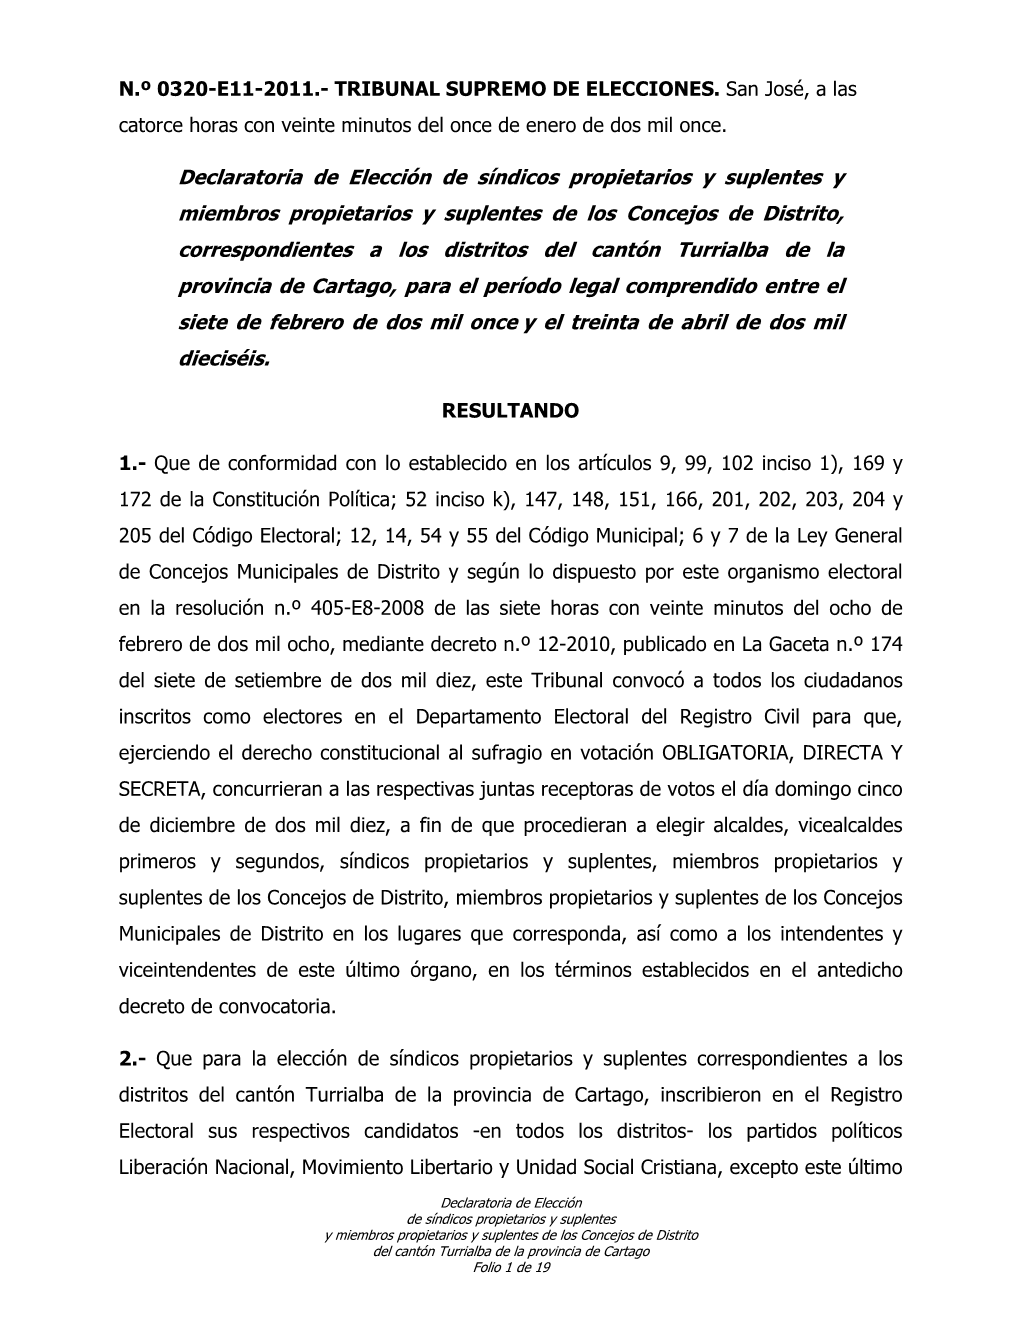 0320-E11-2011 (Declaratoria Síndicos Y Concejales Turrialba)